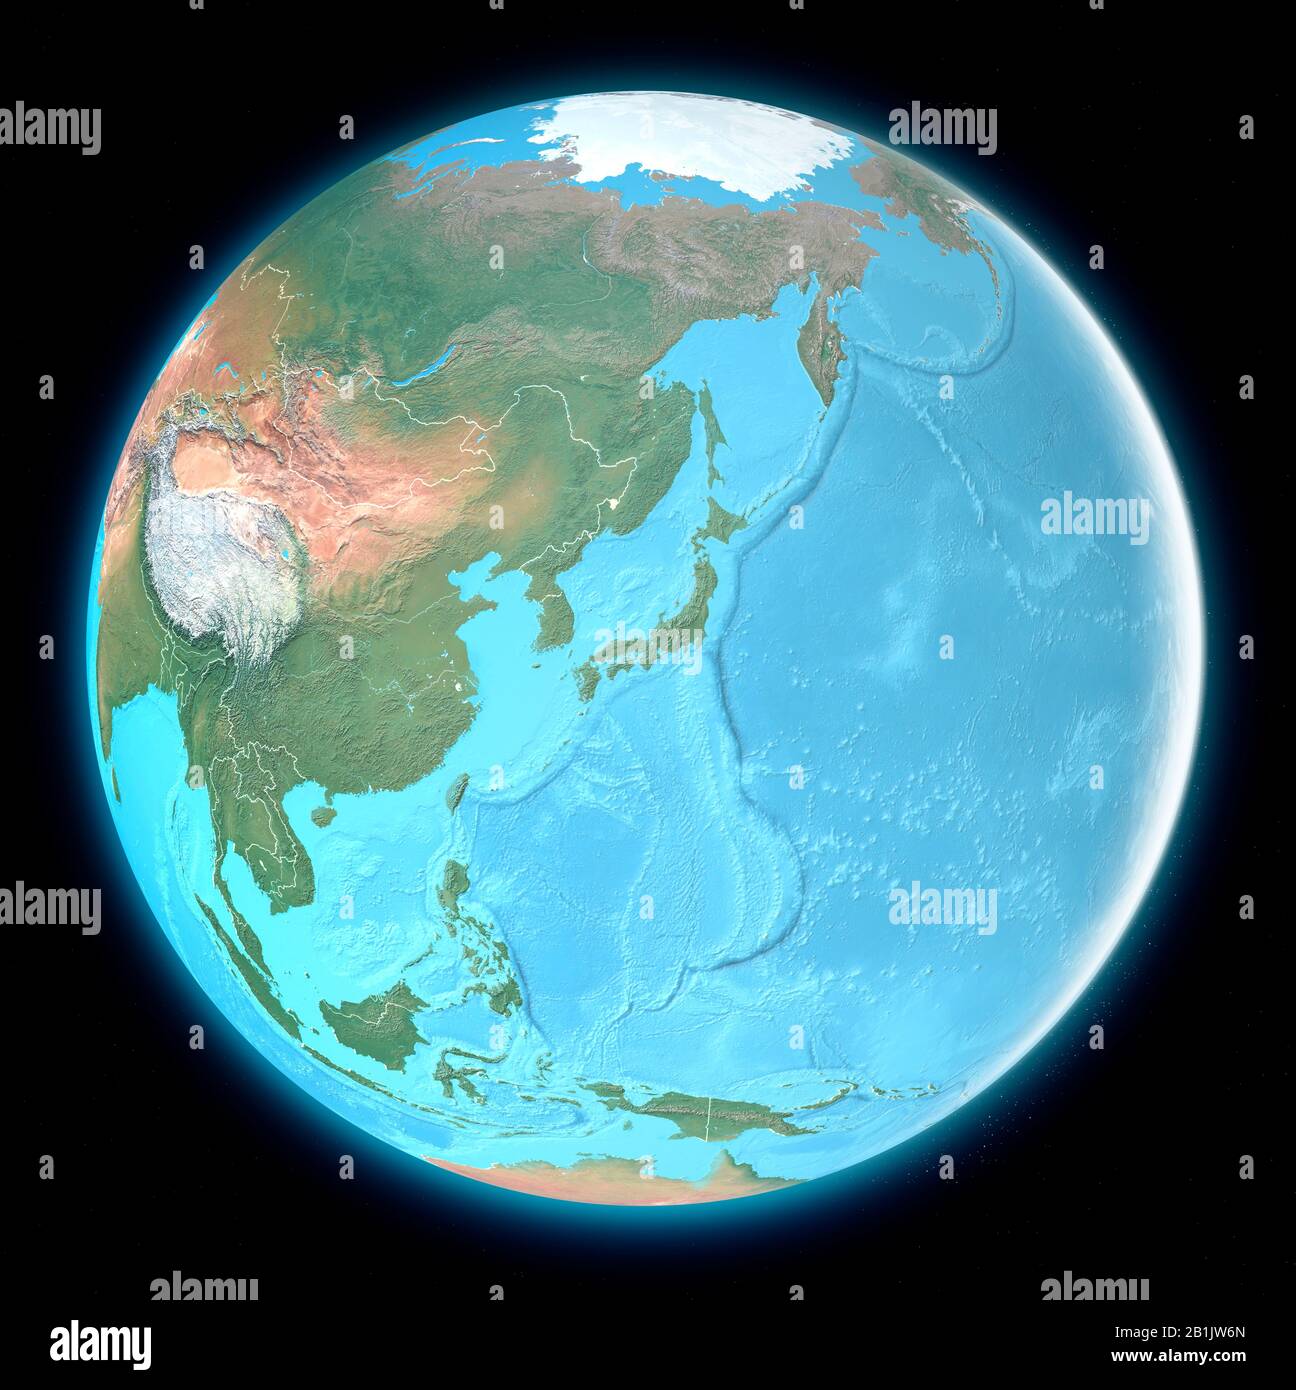 Carte globe de l'Asie de l'est, vue satellite, carte géographique, physique. Cartographie, atlas de relief. rendu tridimensionnel Banque D'Images